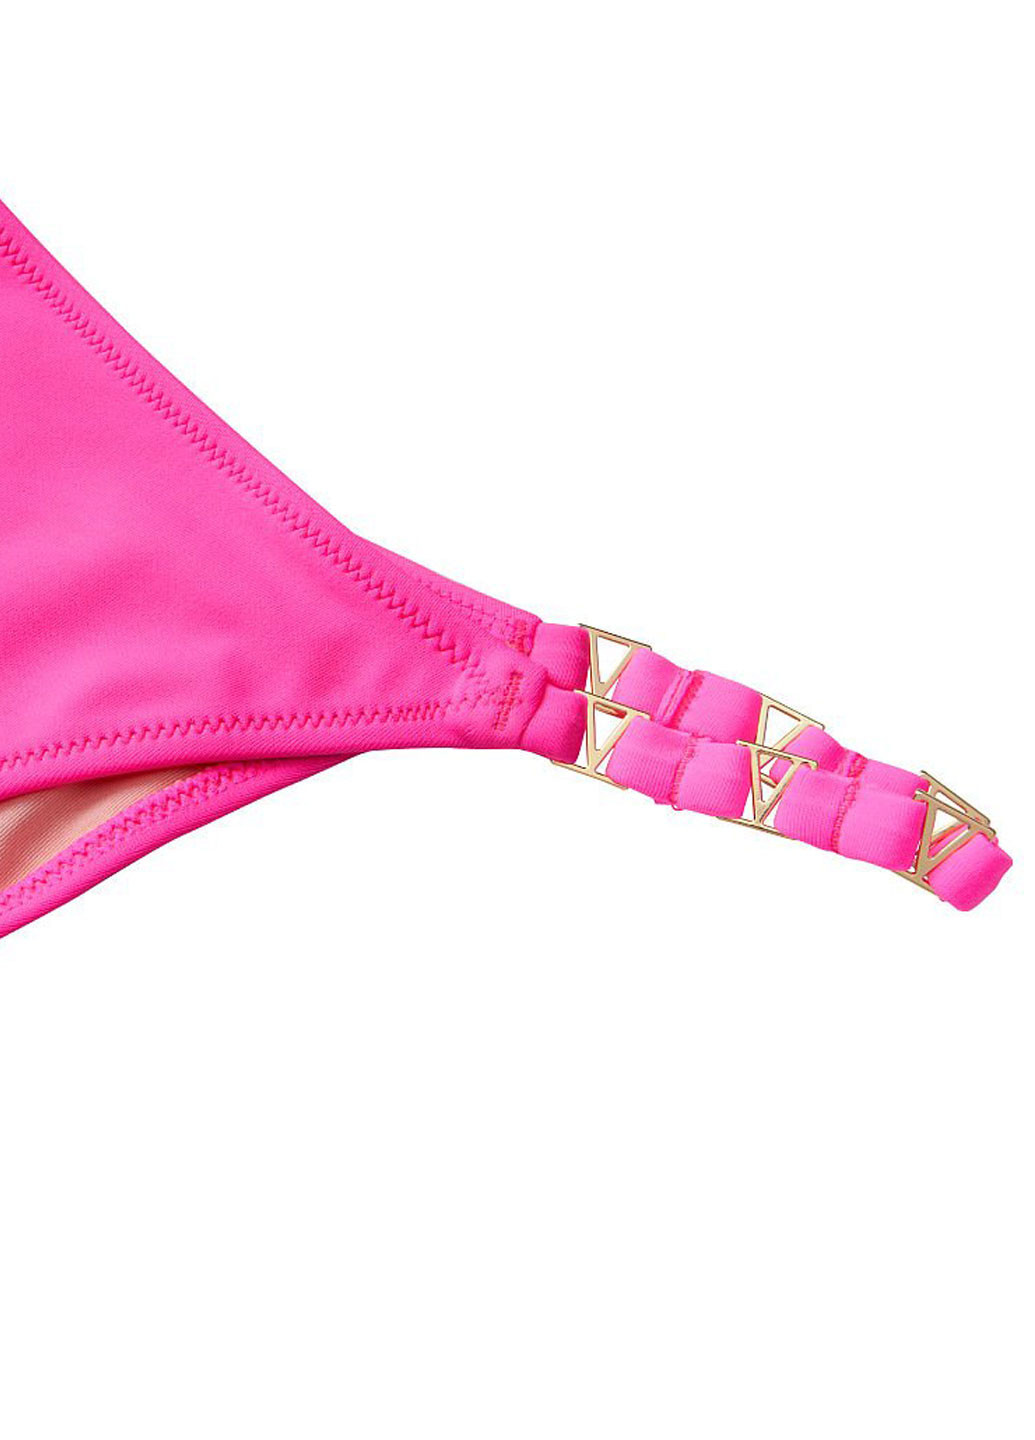 Розовый летний купальник (лиф, трусы) бикини, раздельный Victoria's Secret